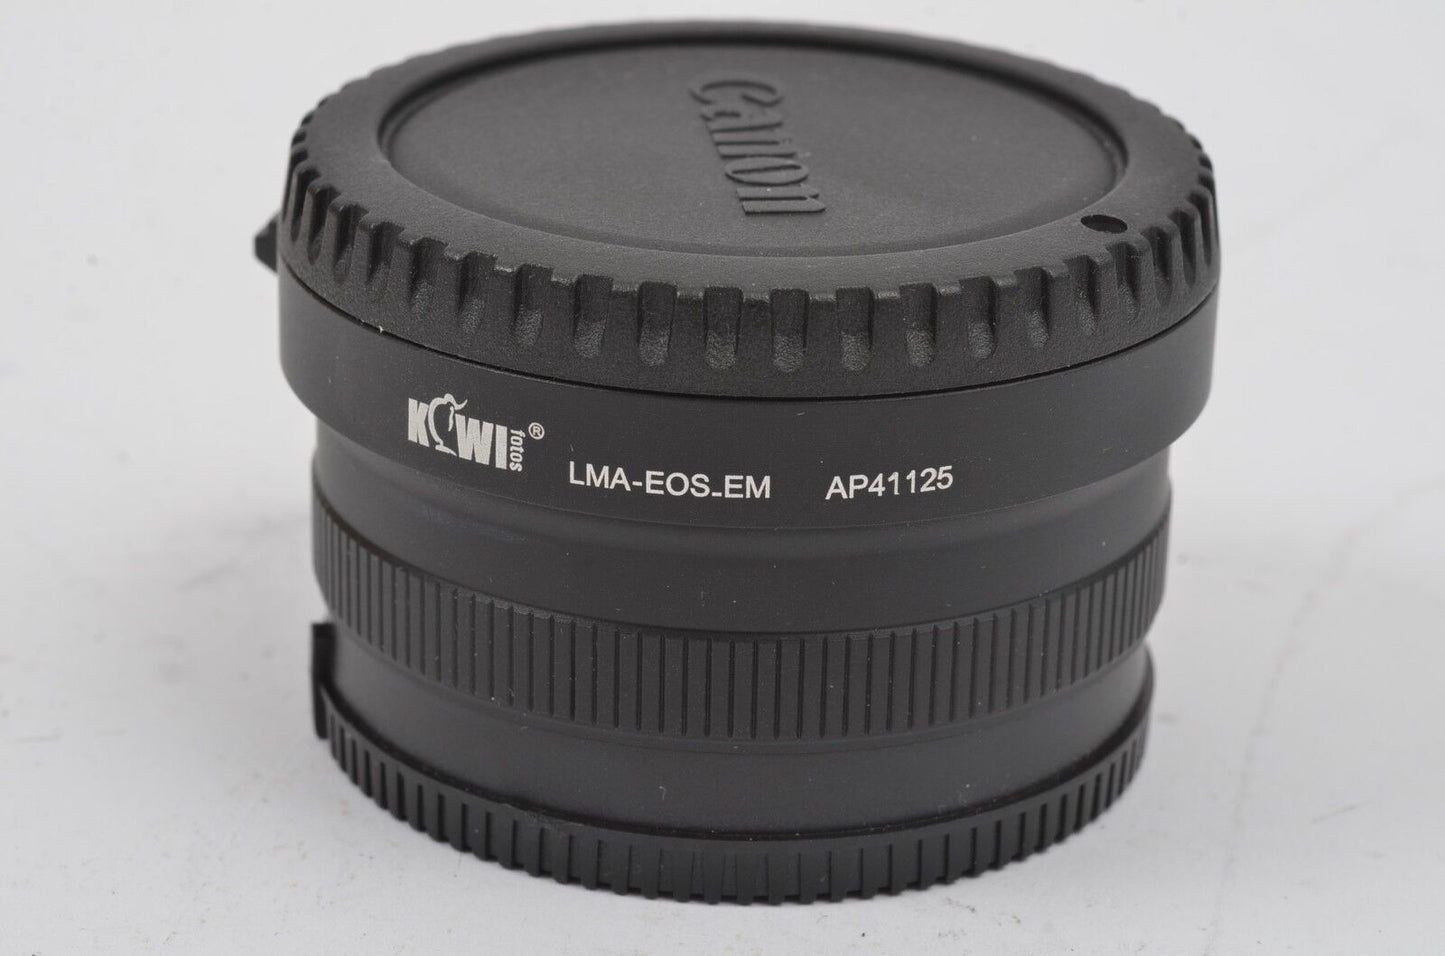 Kiwi Lens Mount Adapter Canon EOS to Sony NEX/E-Mount w/ caps